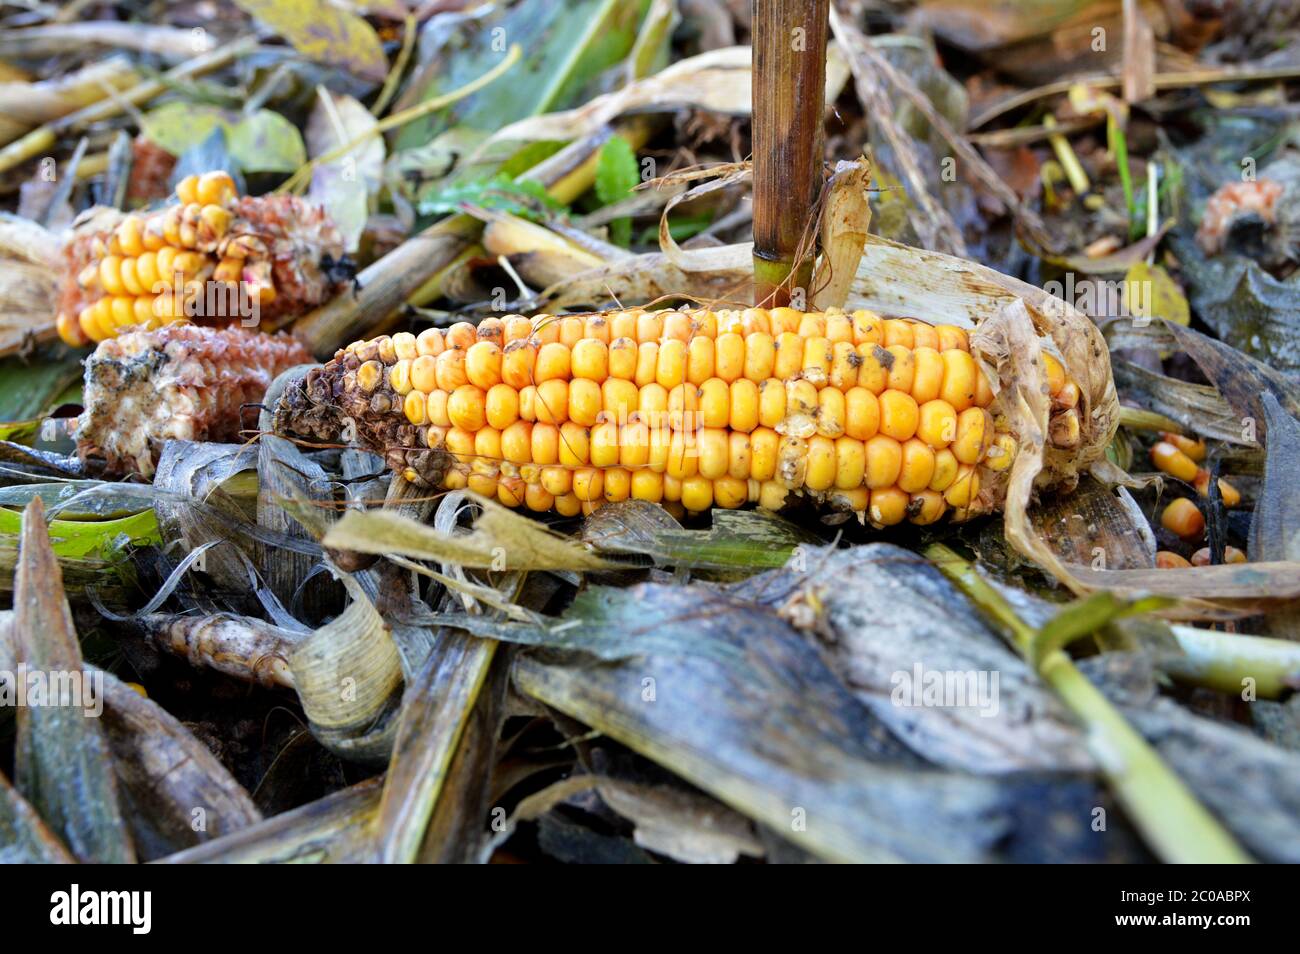 Eine Ähre von Mais oder Maiskolben in einem landwirtschaftlichen Feld von Mais. Stockfoto